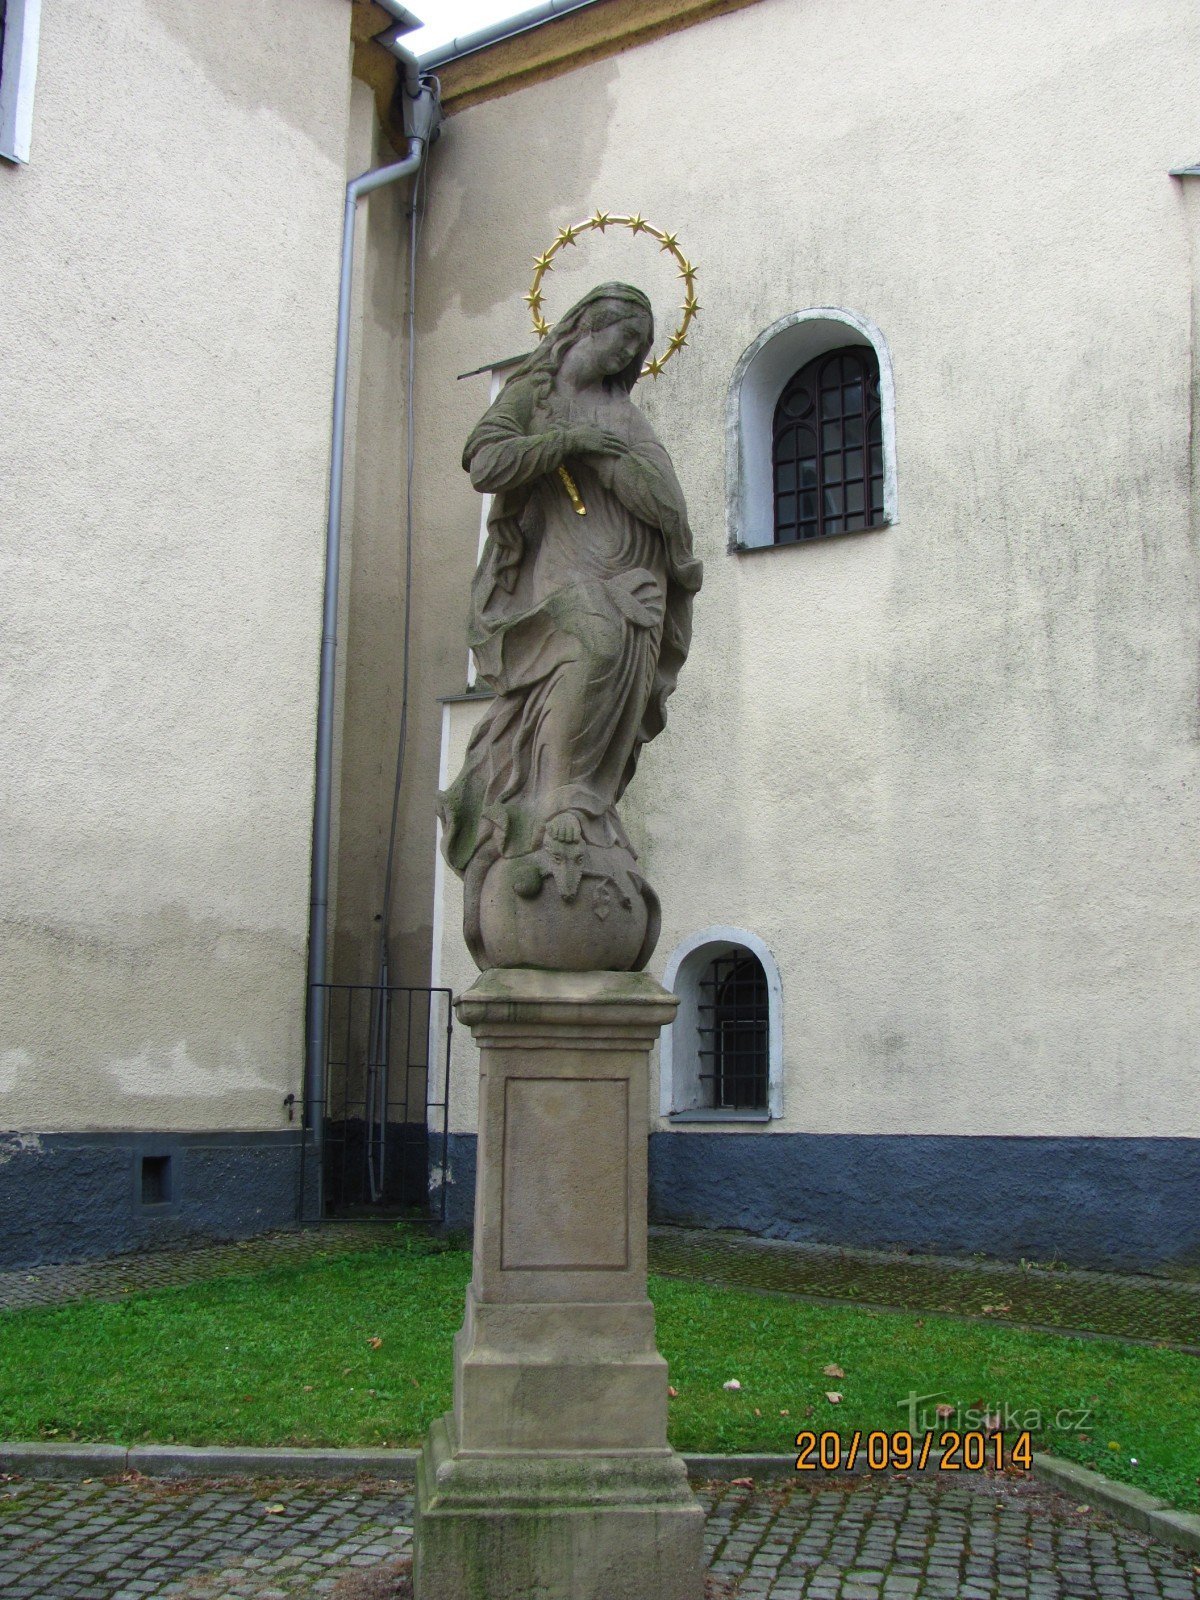 Szűz Mária szobor a Szent István-templomban. Kateřiny Klimkovicében